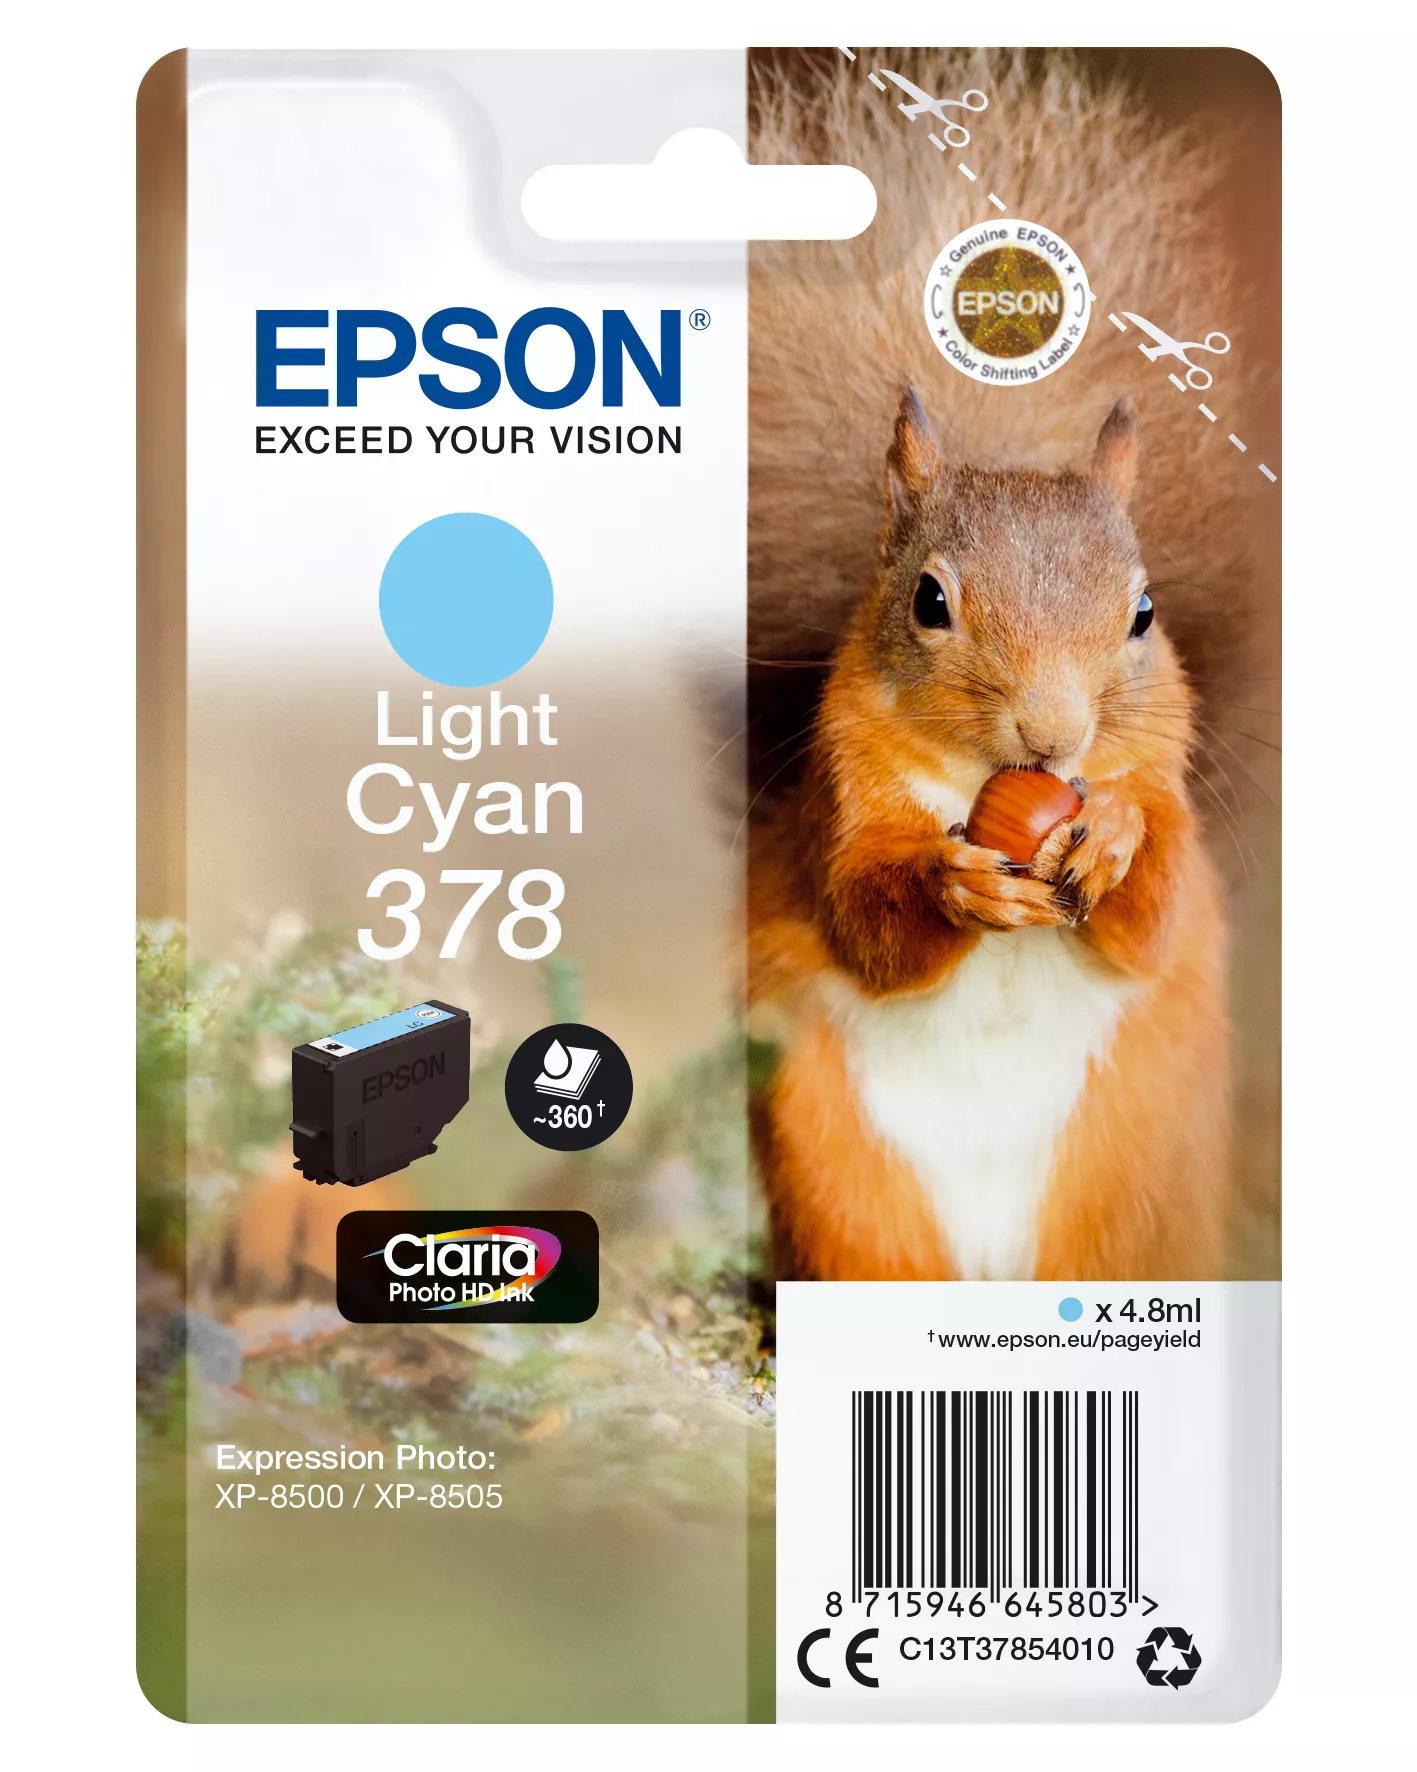 Achat EPSON Singlepack Light Cyan 378 Eichhörnchen Clara Photo sur hello RSE